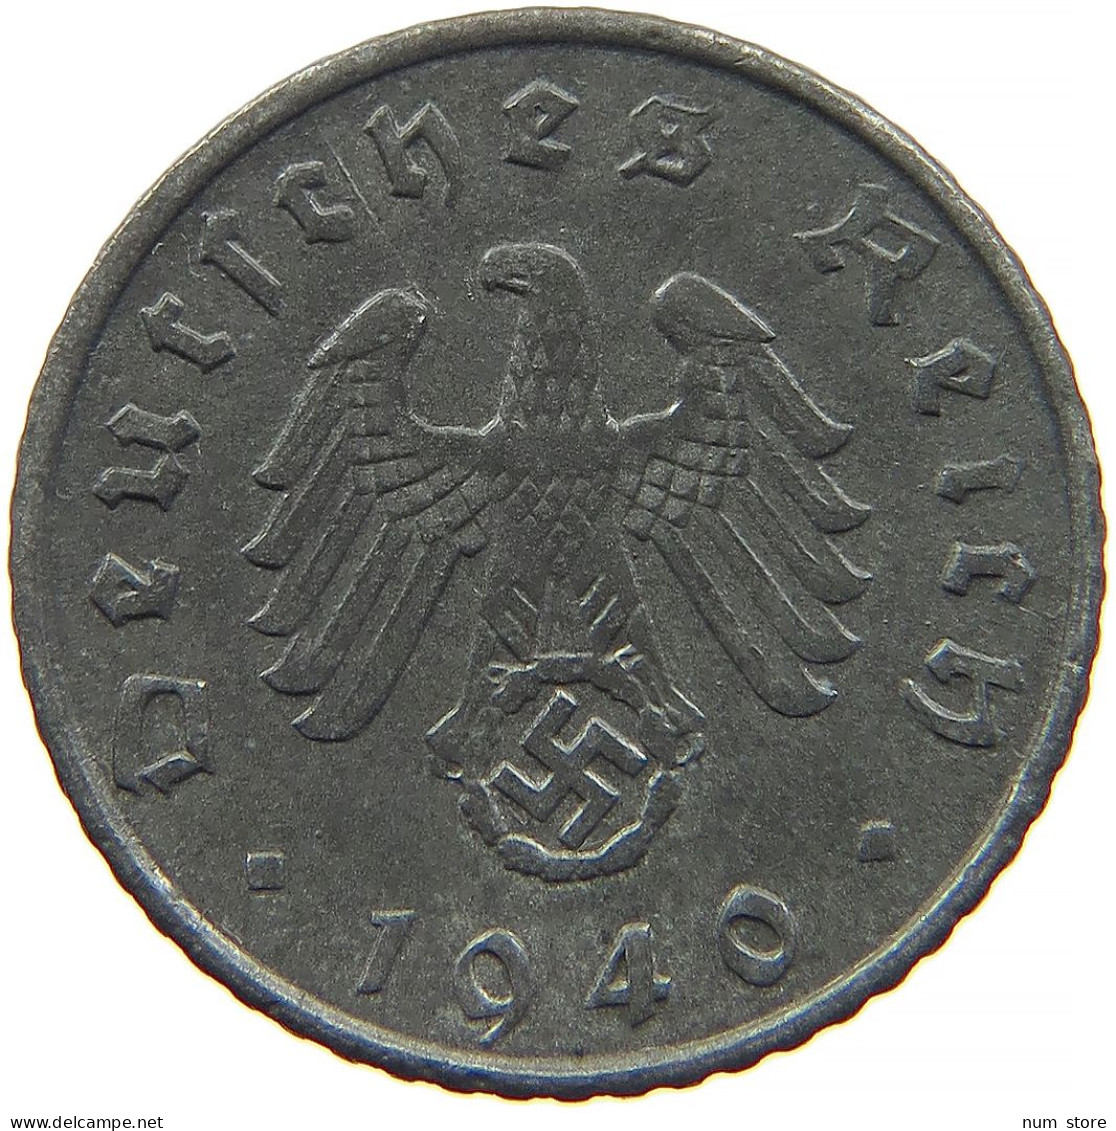 GERMANY 5 REICHSPFENNIG 1940 A #s091 0941 - 5 Reichspfennig